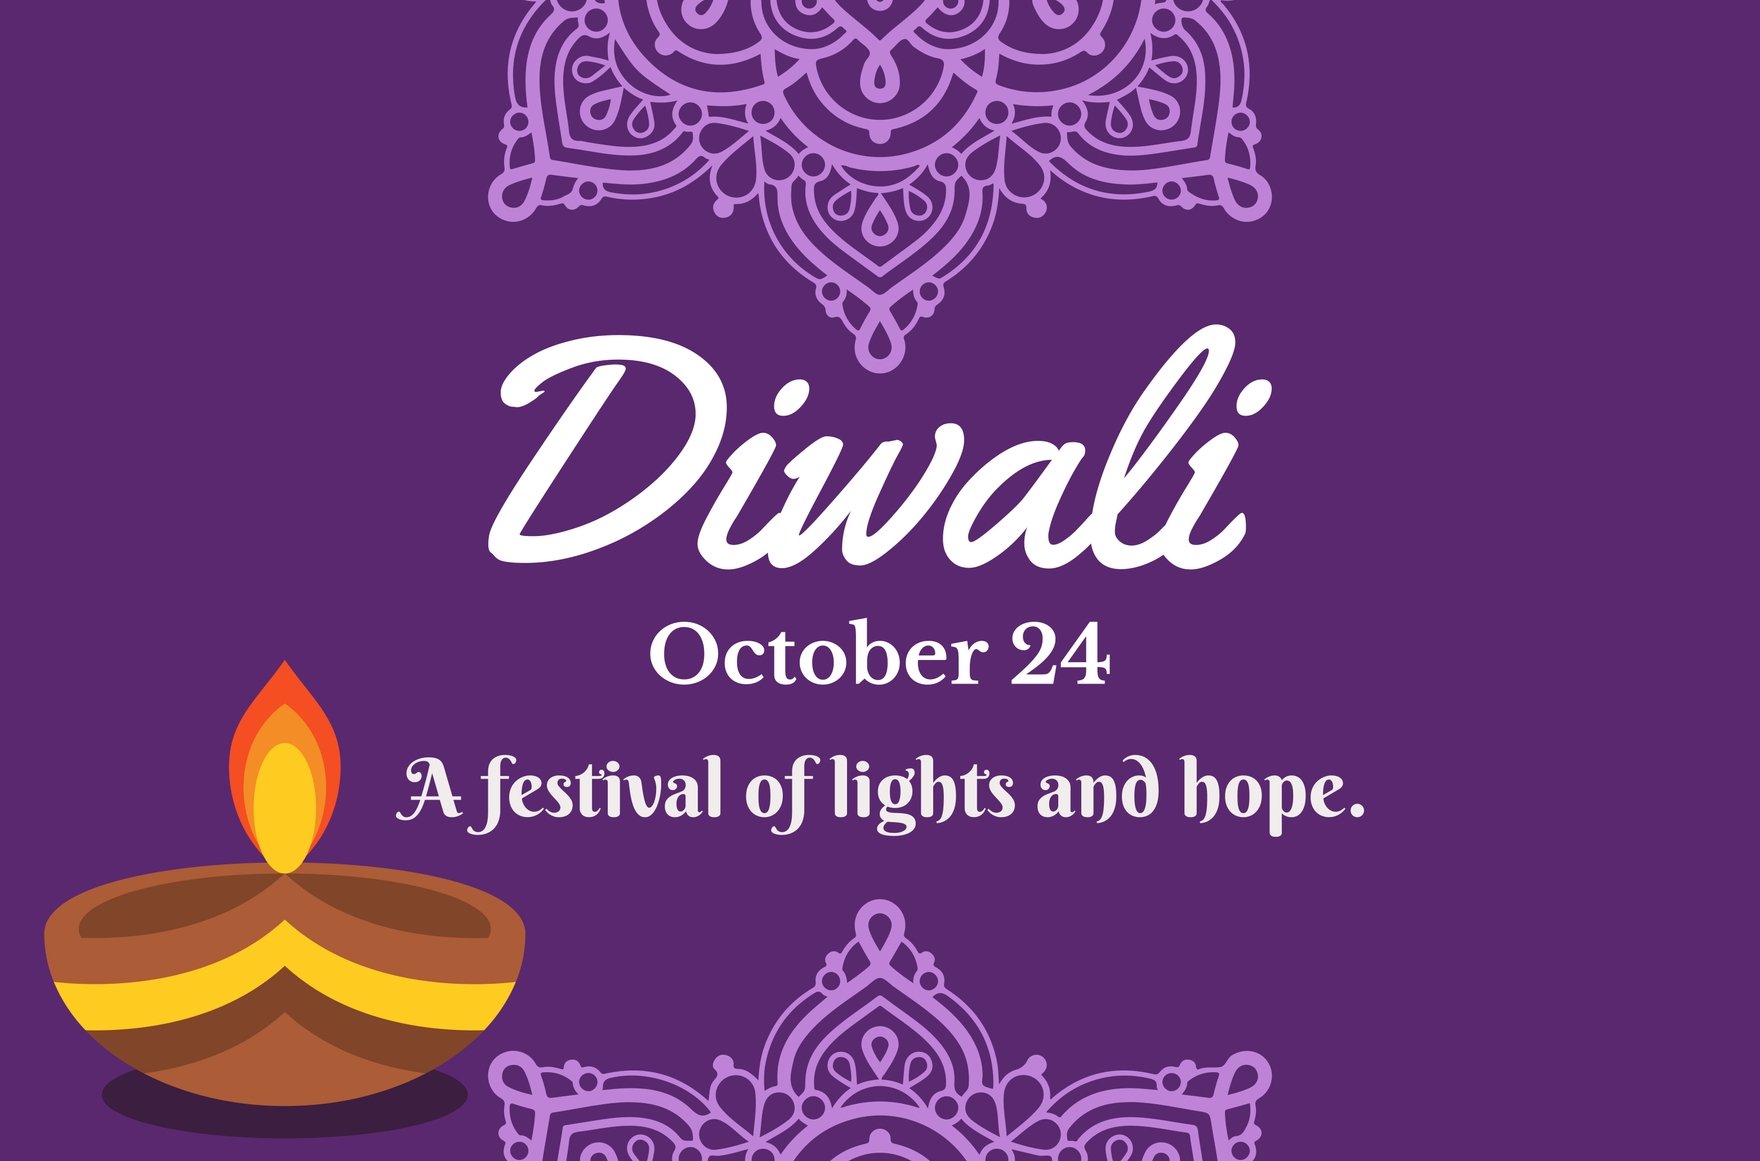 Free Diwali Banner in Illustrator, PSD, EPS, SVG, JPG, PNG